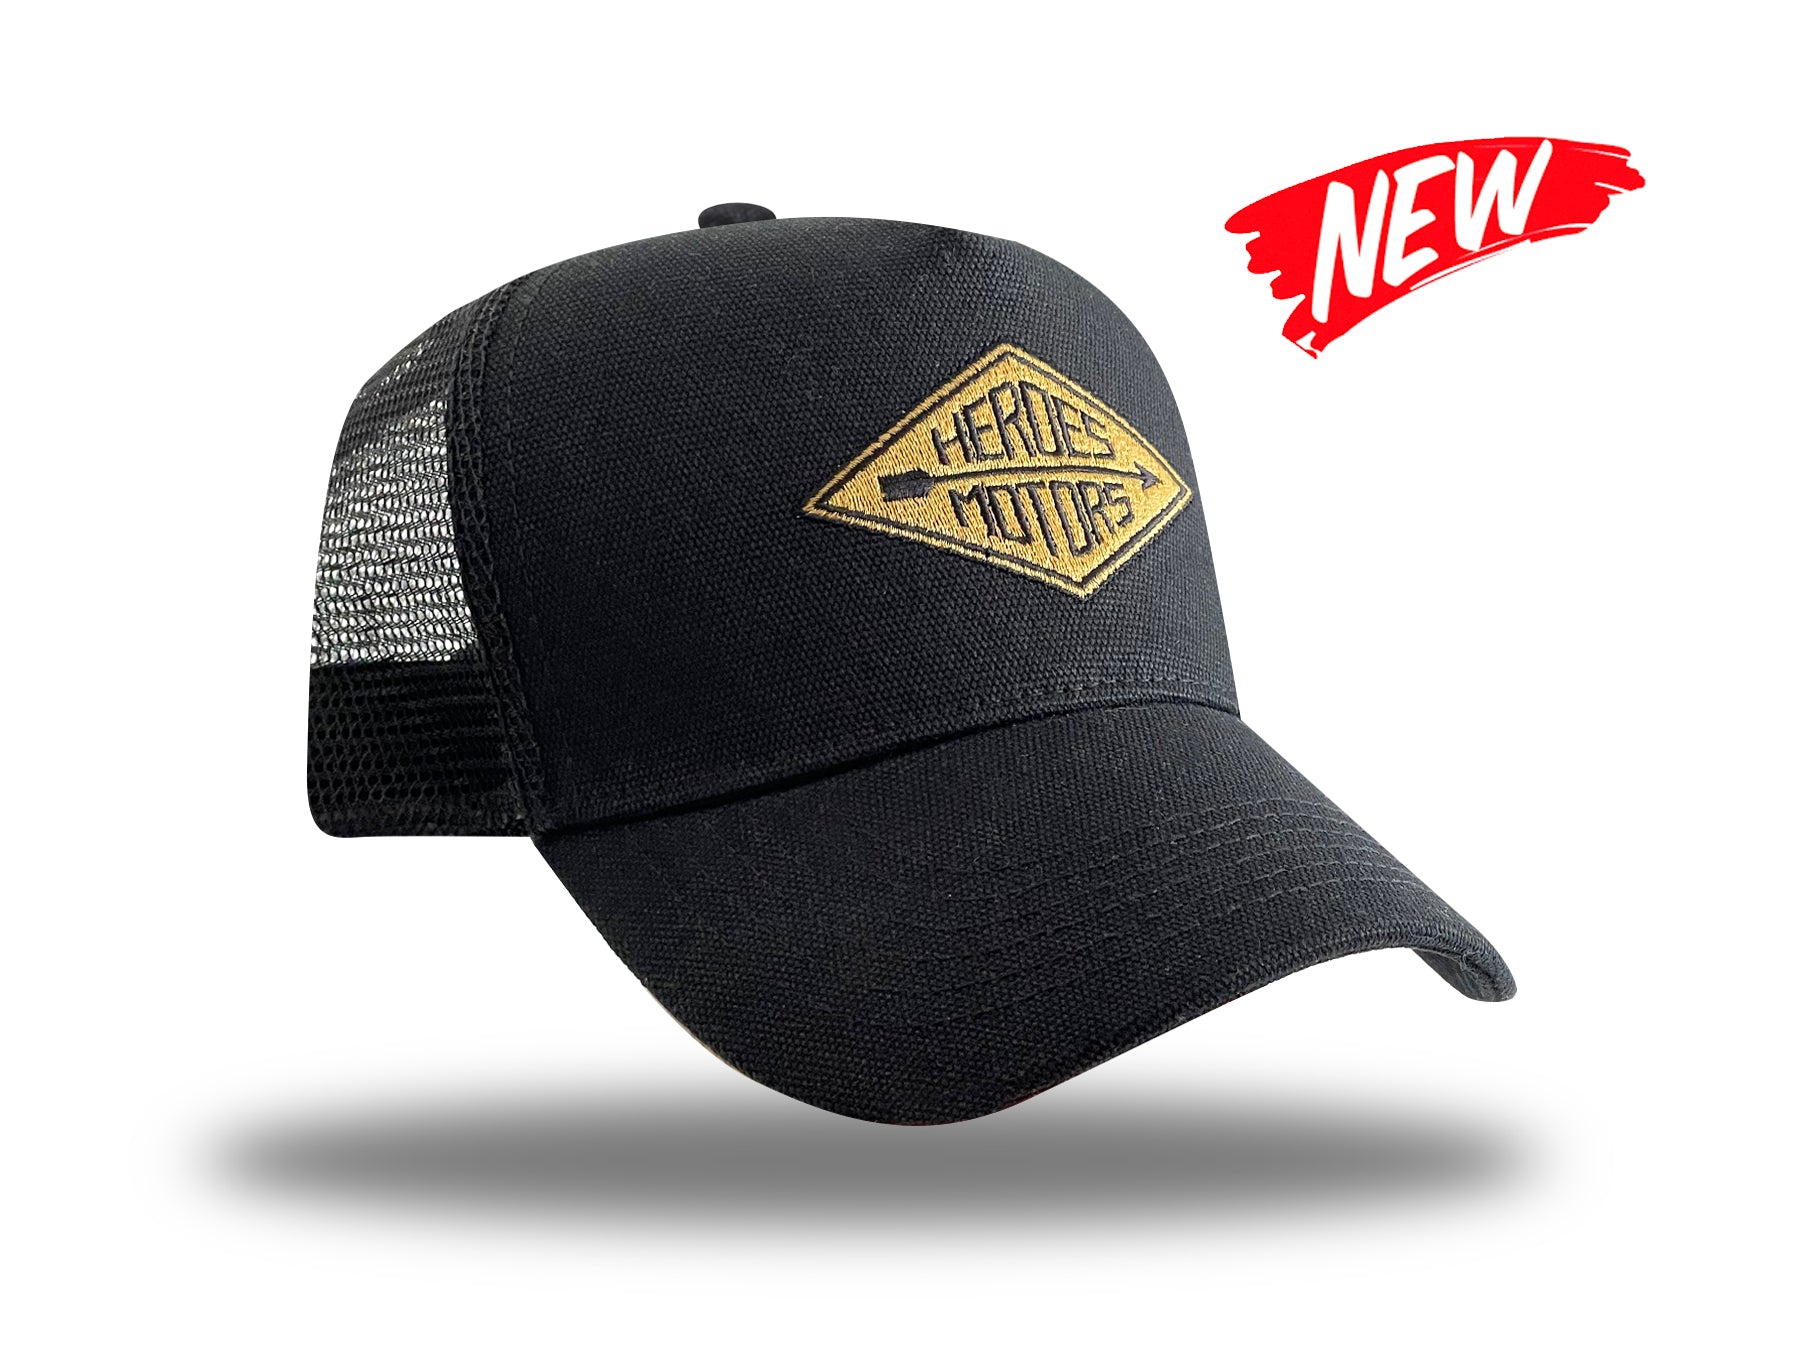 Trucker Hat "Arrow" HM6020 Black/Gold